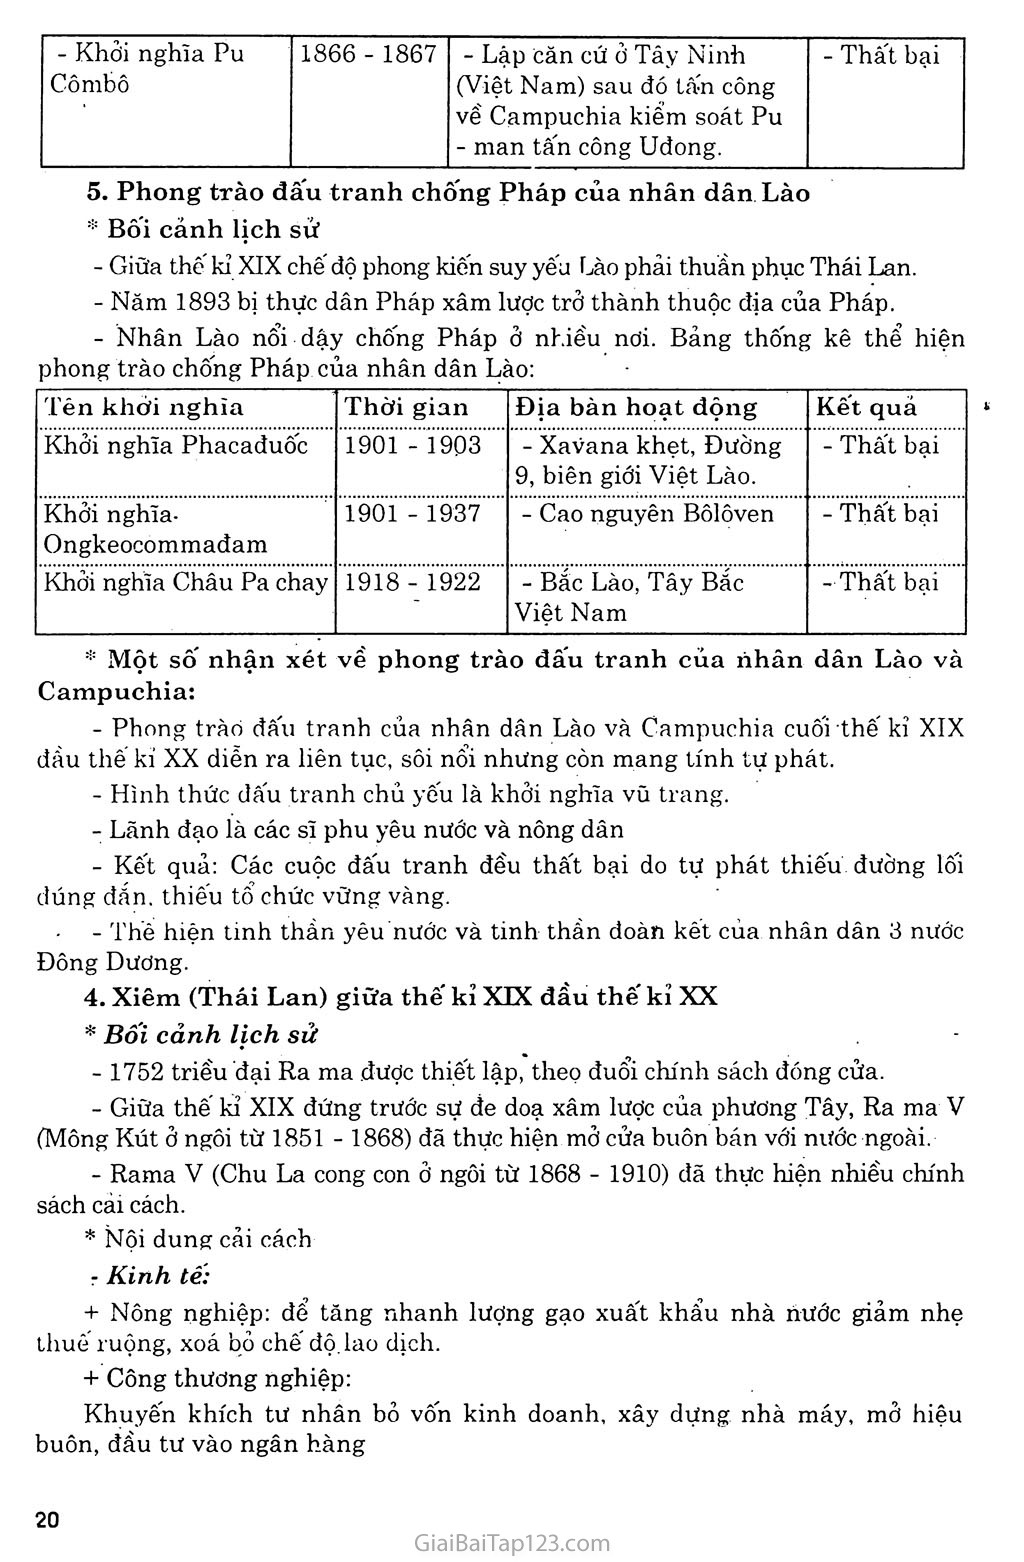 Bài 4: Các nước Đông Nam Á (Cuối thế kỷ XIX - đầu thế kỷ XX) trang 4